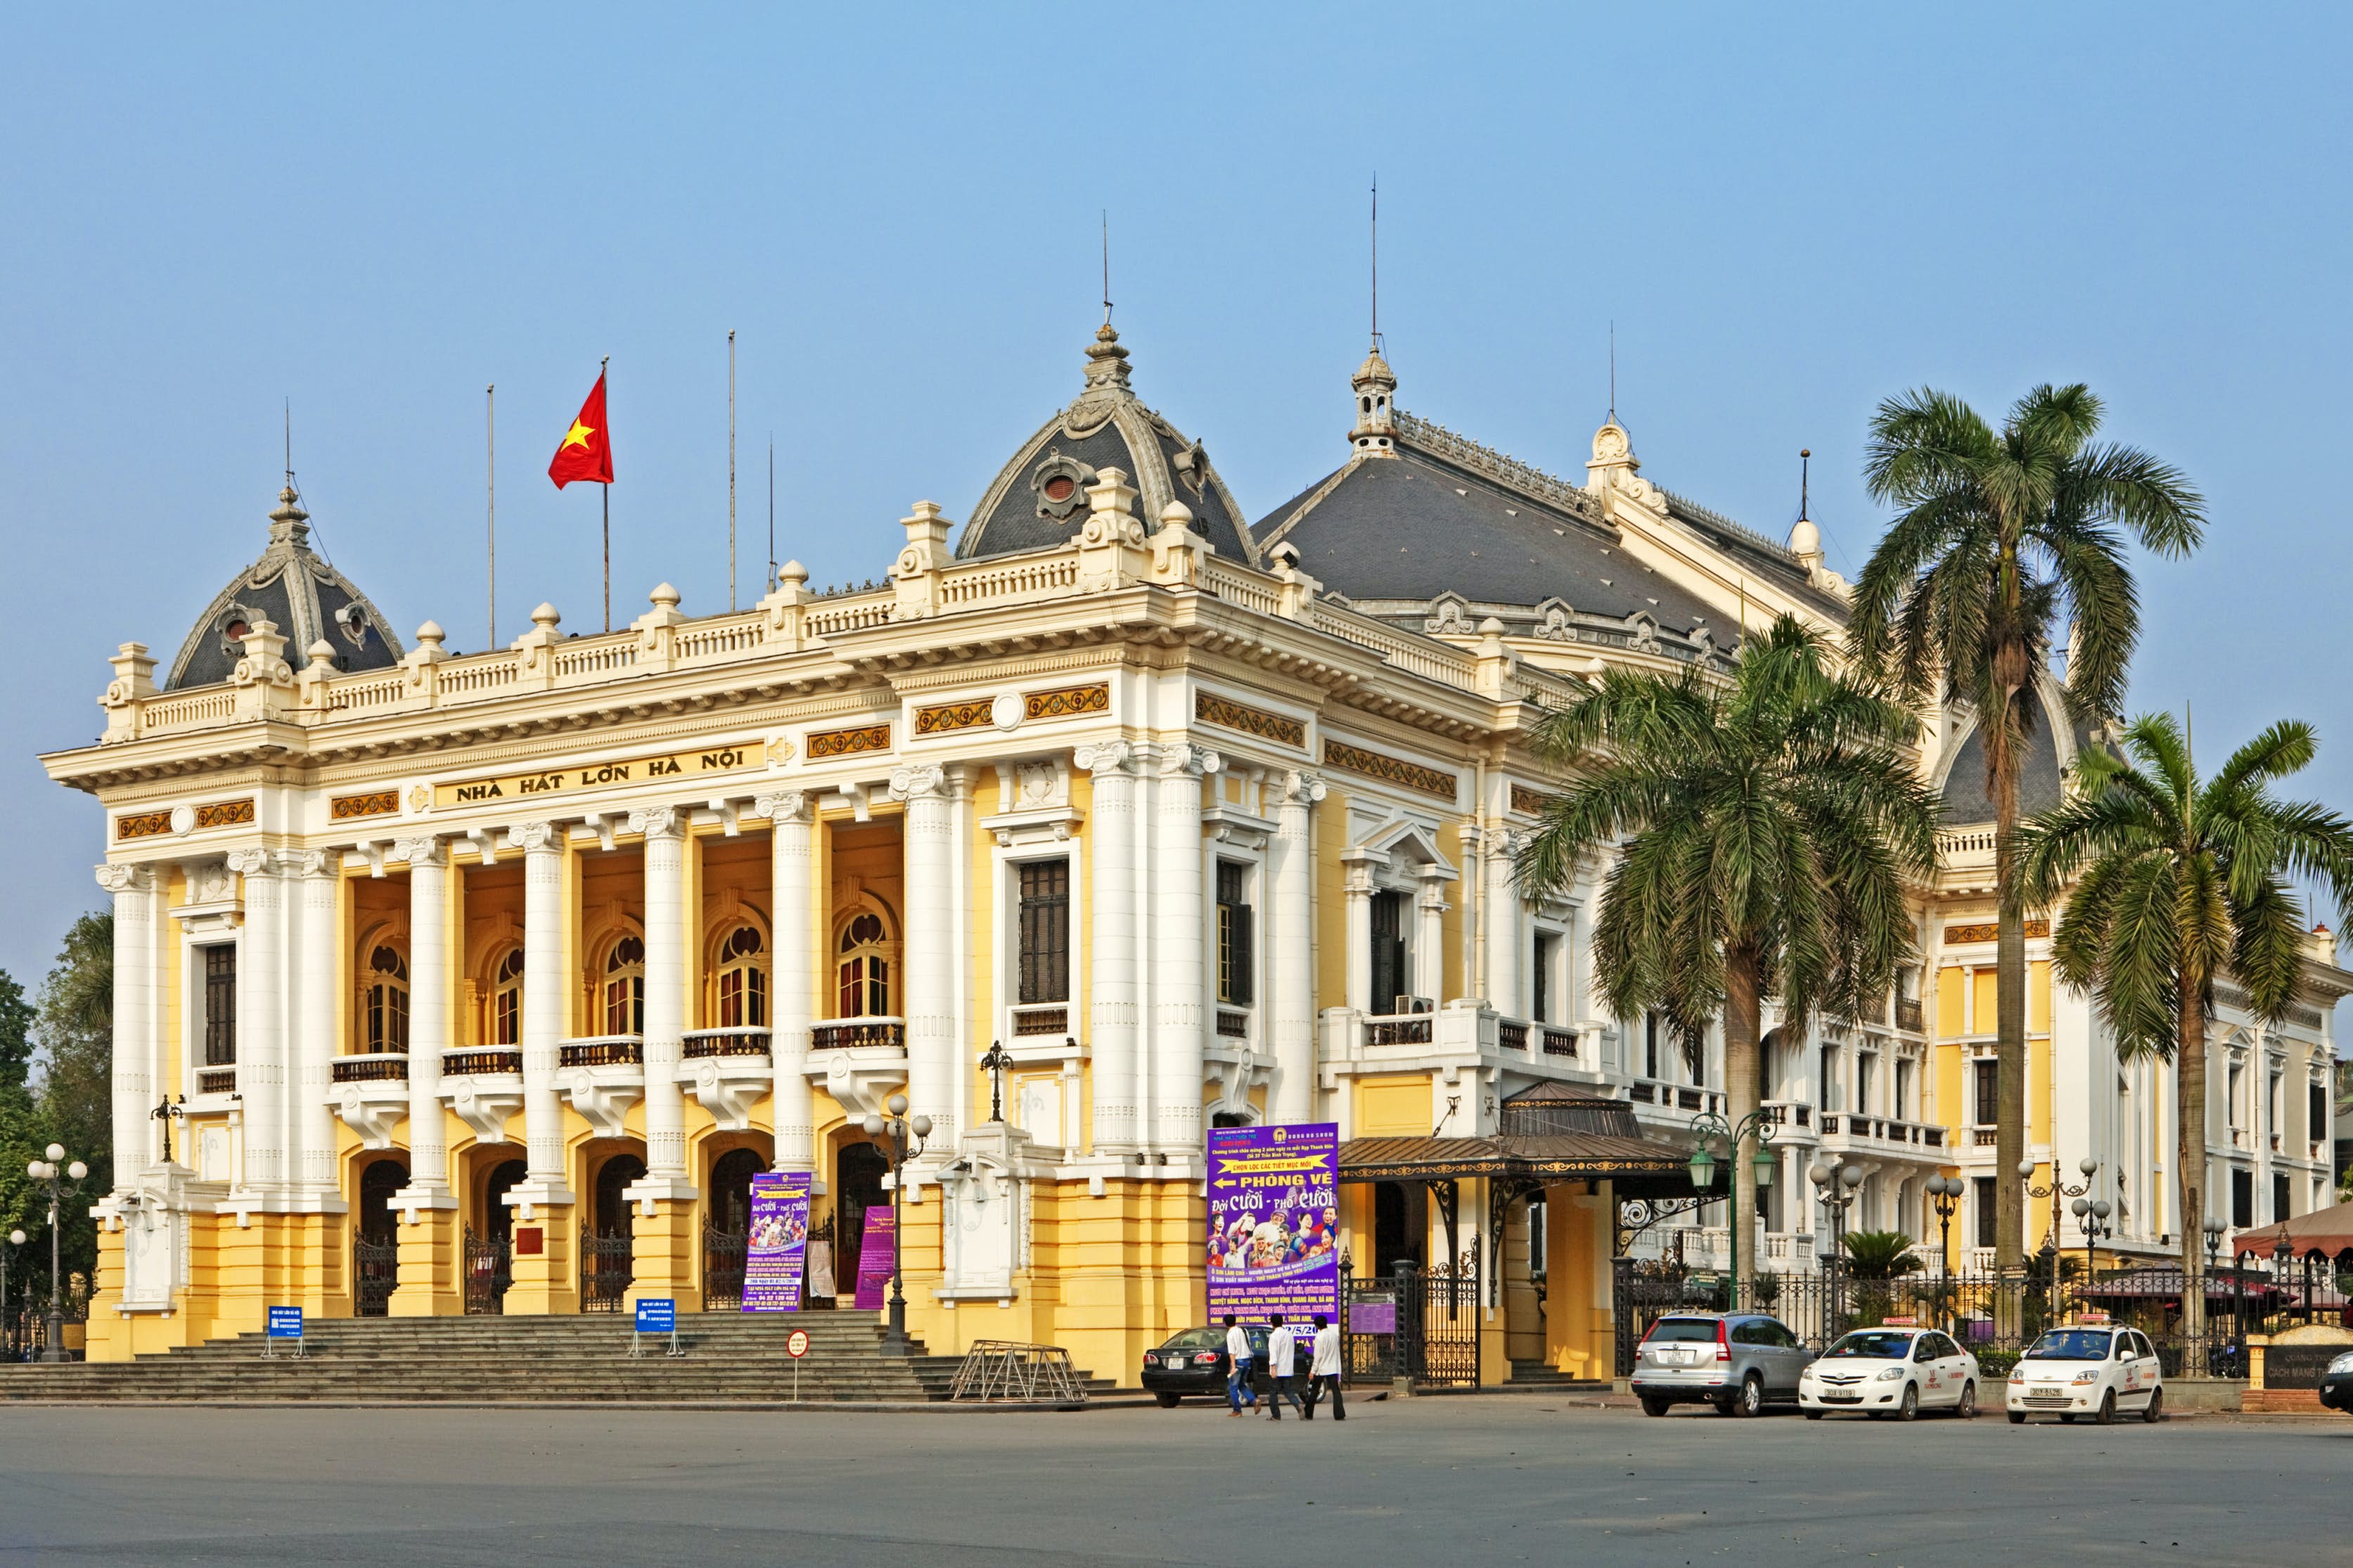 Nhà hát Lớn Hà Nội – biểu tượng của kiến trúc, văn hóa, nghệ thuật Thủ đô - iVIVU.com